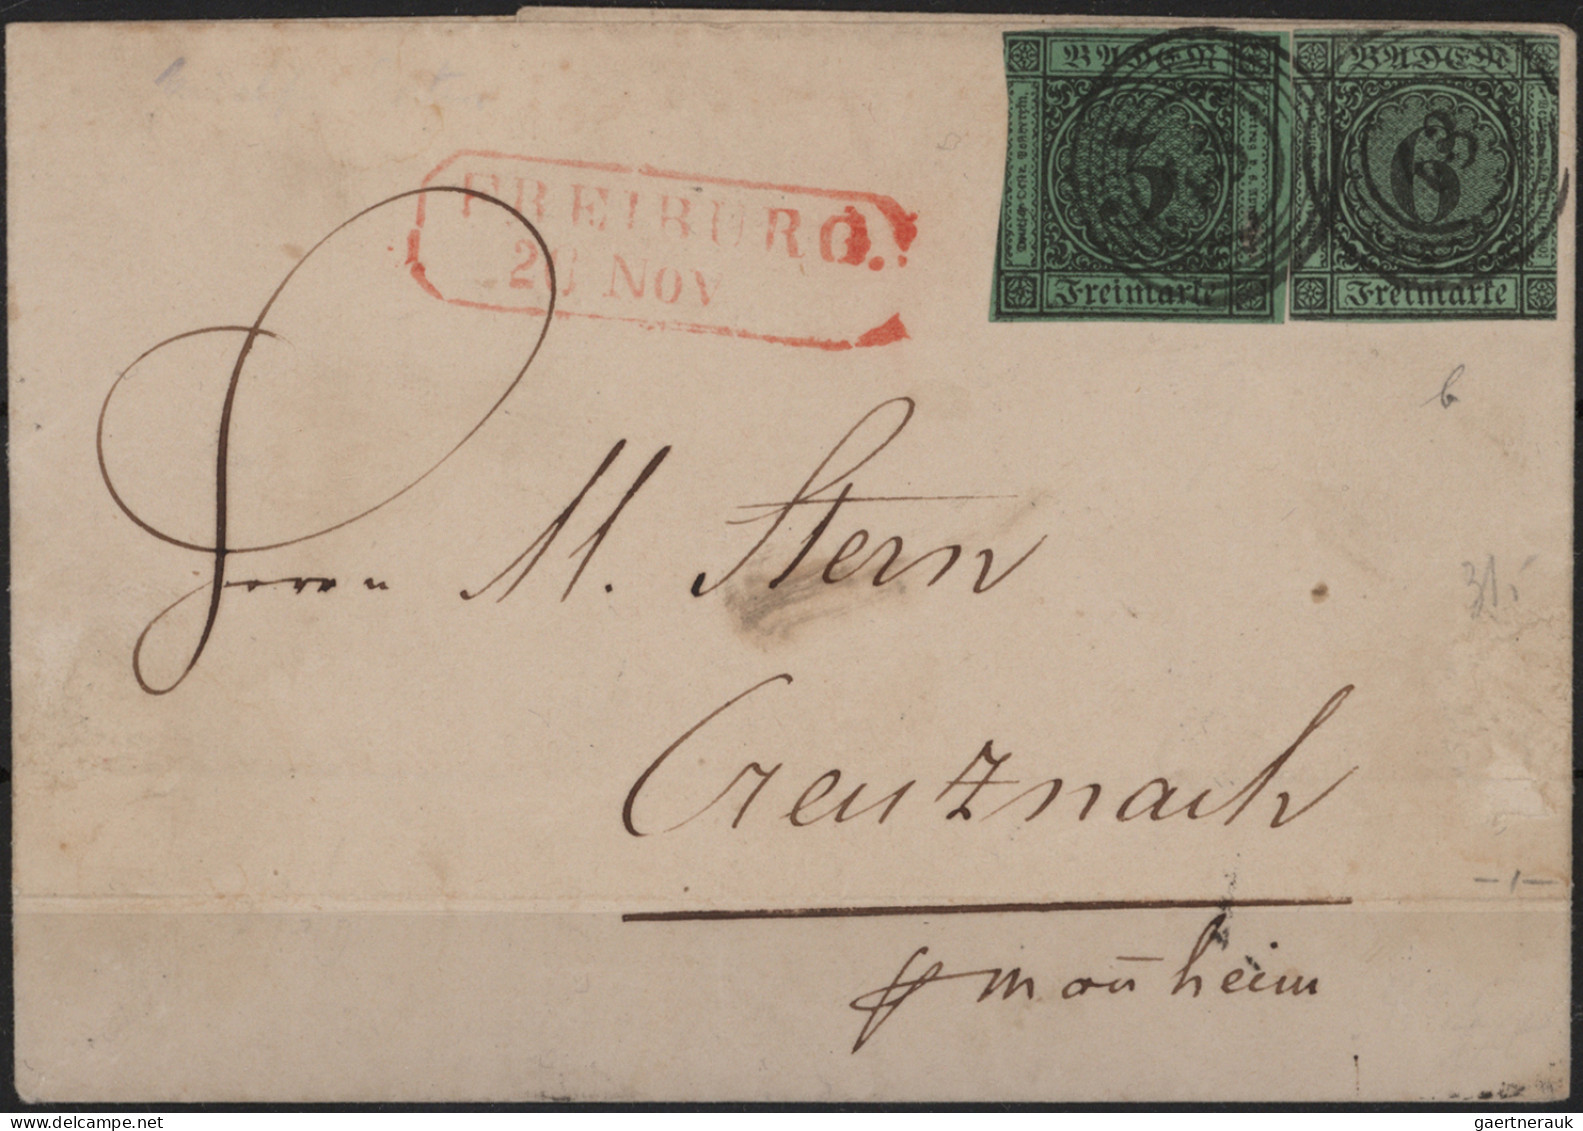 Baden - Marken und Briefe: 1852/1870 (ca.), Umfangreiche Sammlung von hunderten